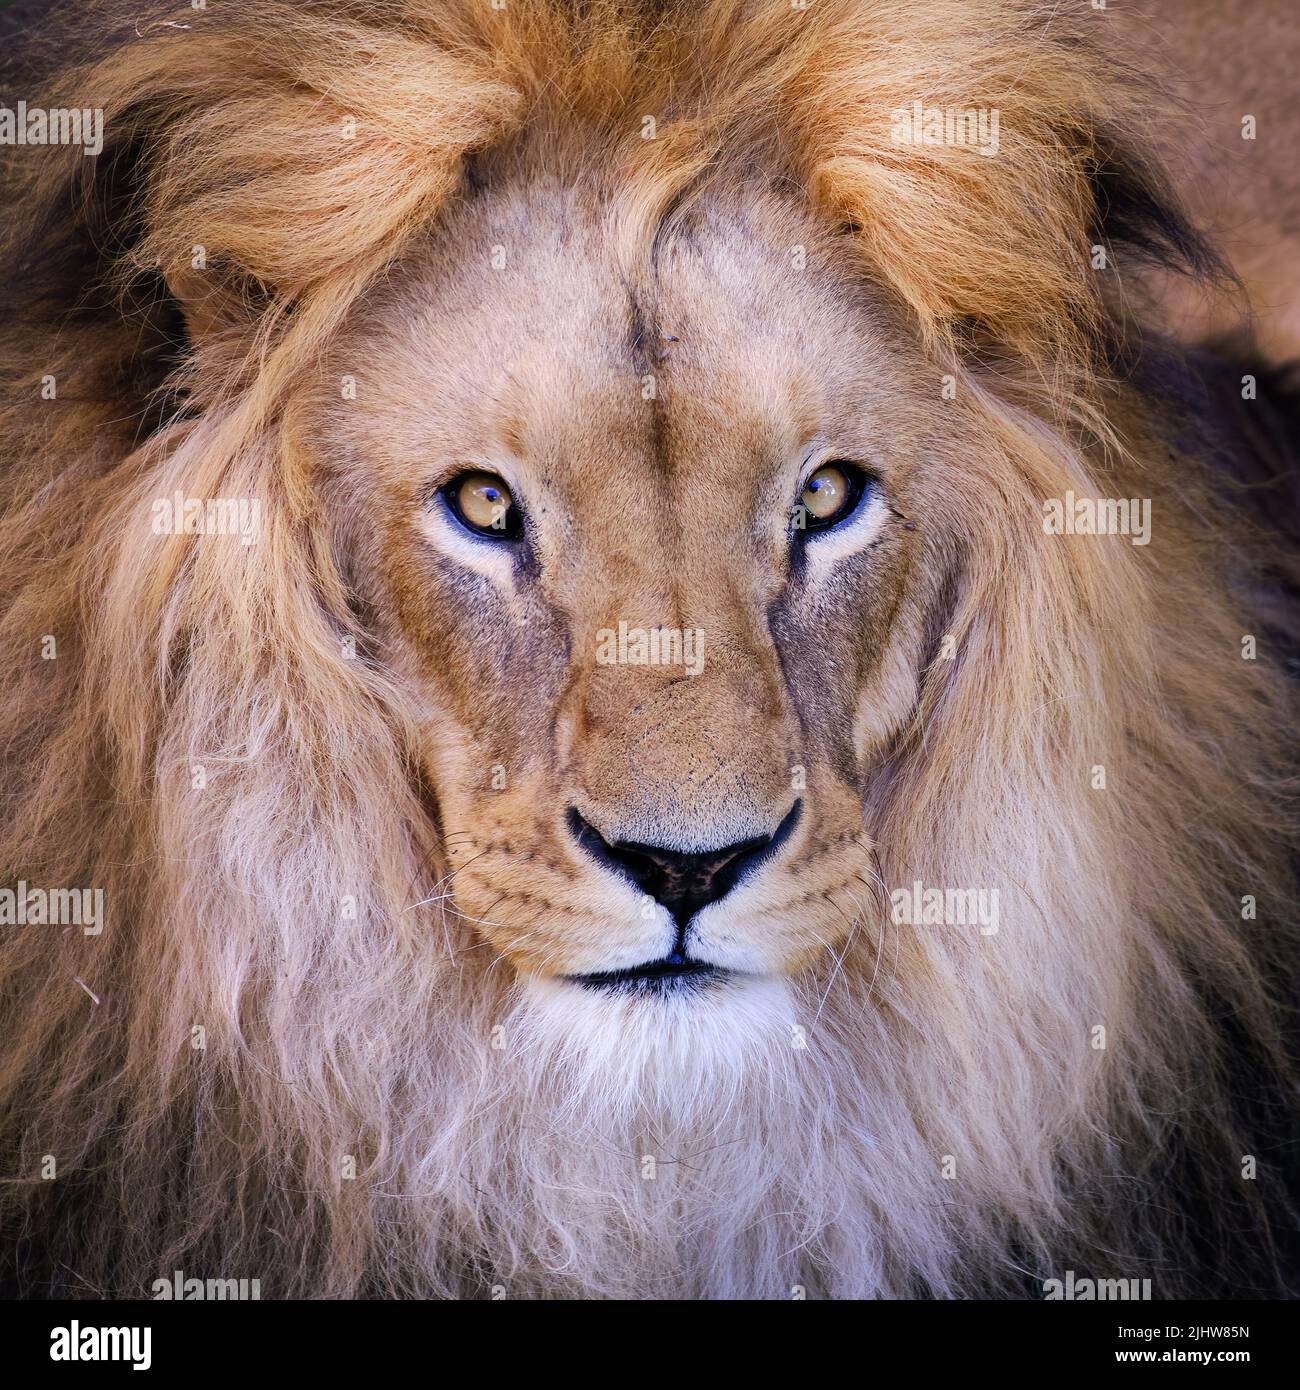 León AFRICANO (Panthera leo) Hermoso retrato del rey de la selva, un poderoso león africano. Foto de stock